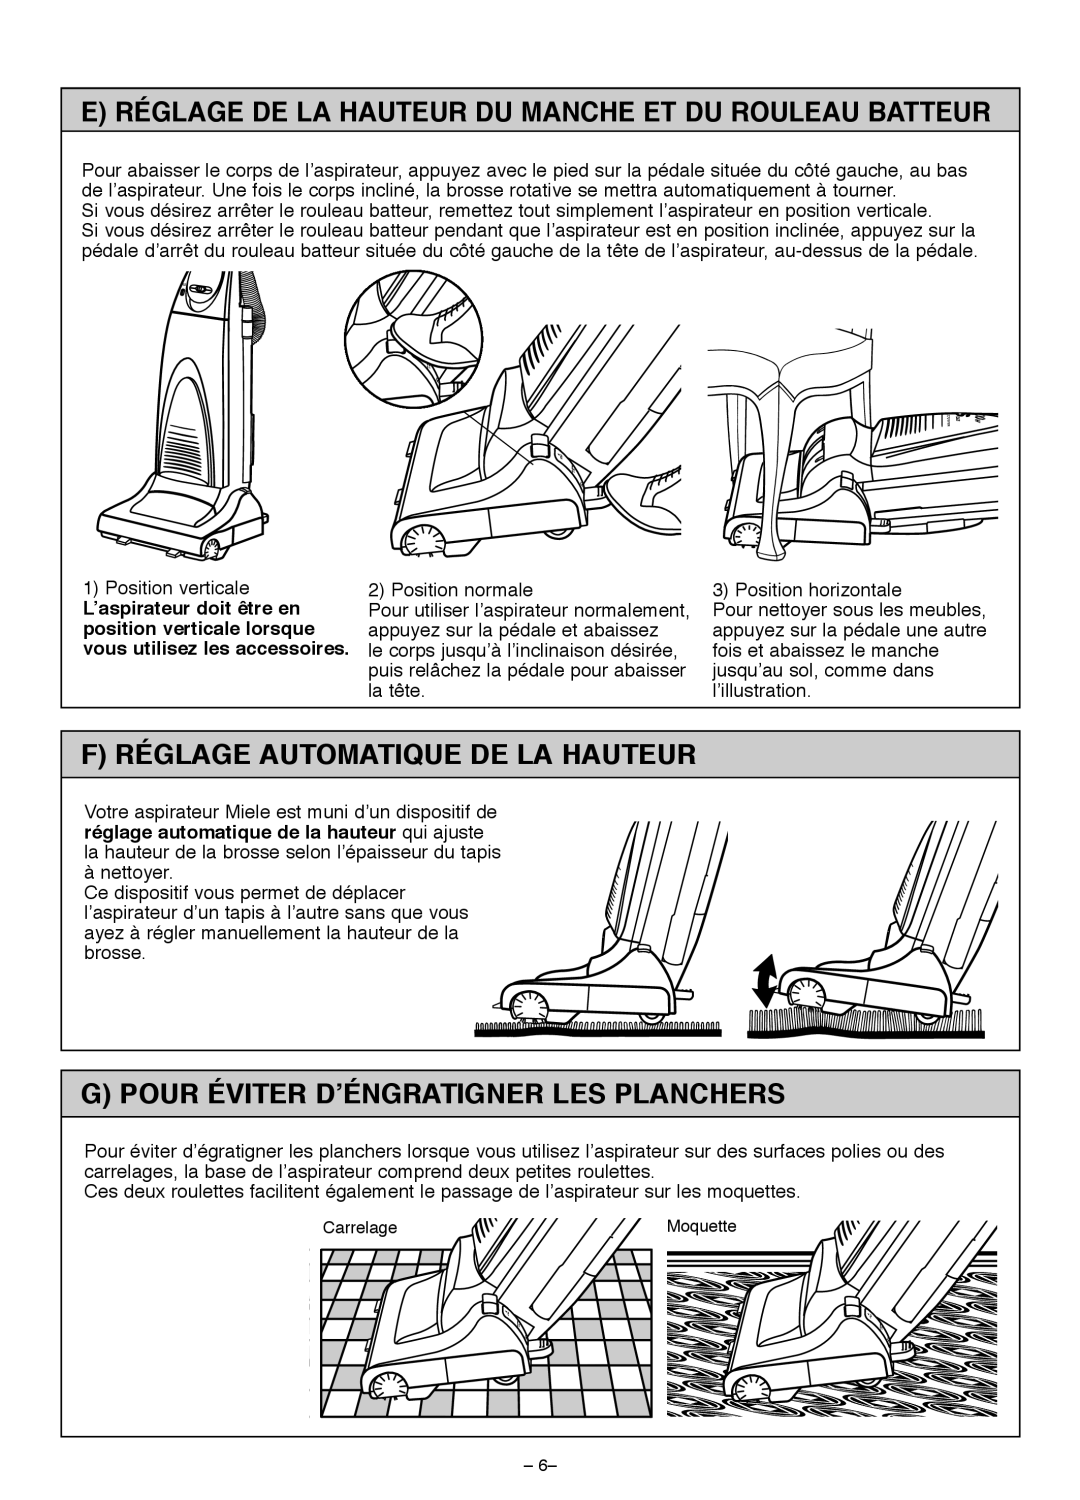 Miele S185 important safety instructions F Réglage Automatique De La Hauteur, G Pour Éviter D’Éngratigner Les Planchers 